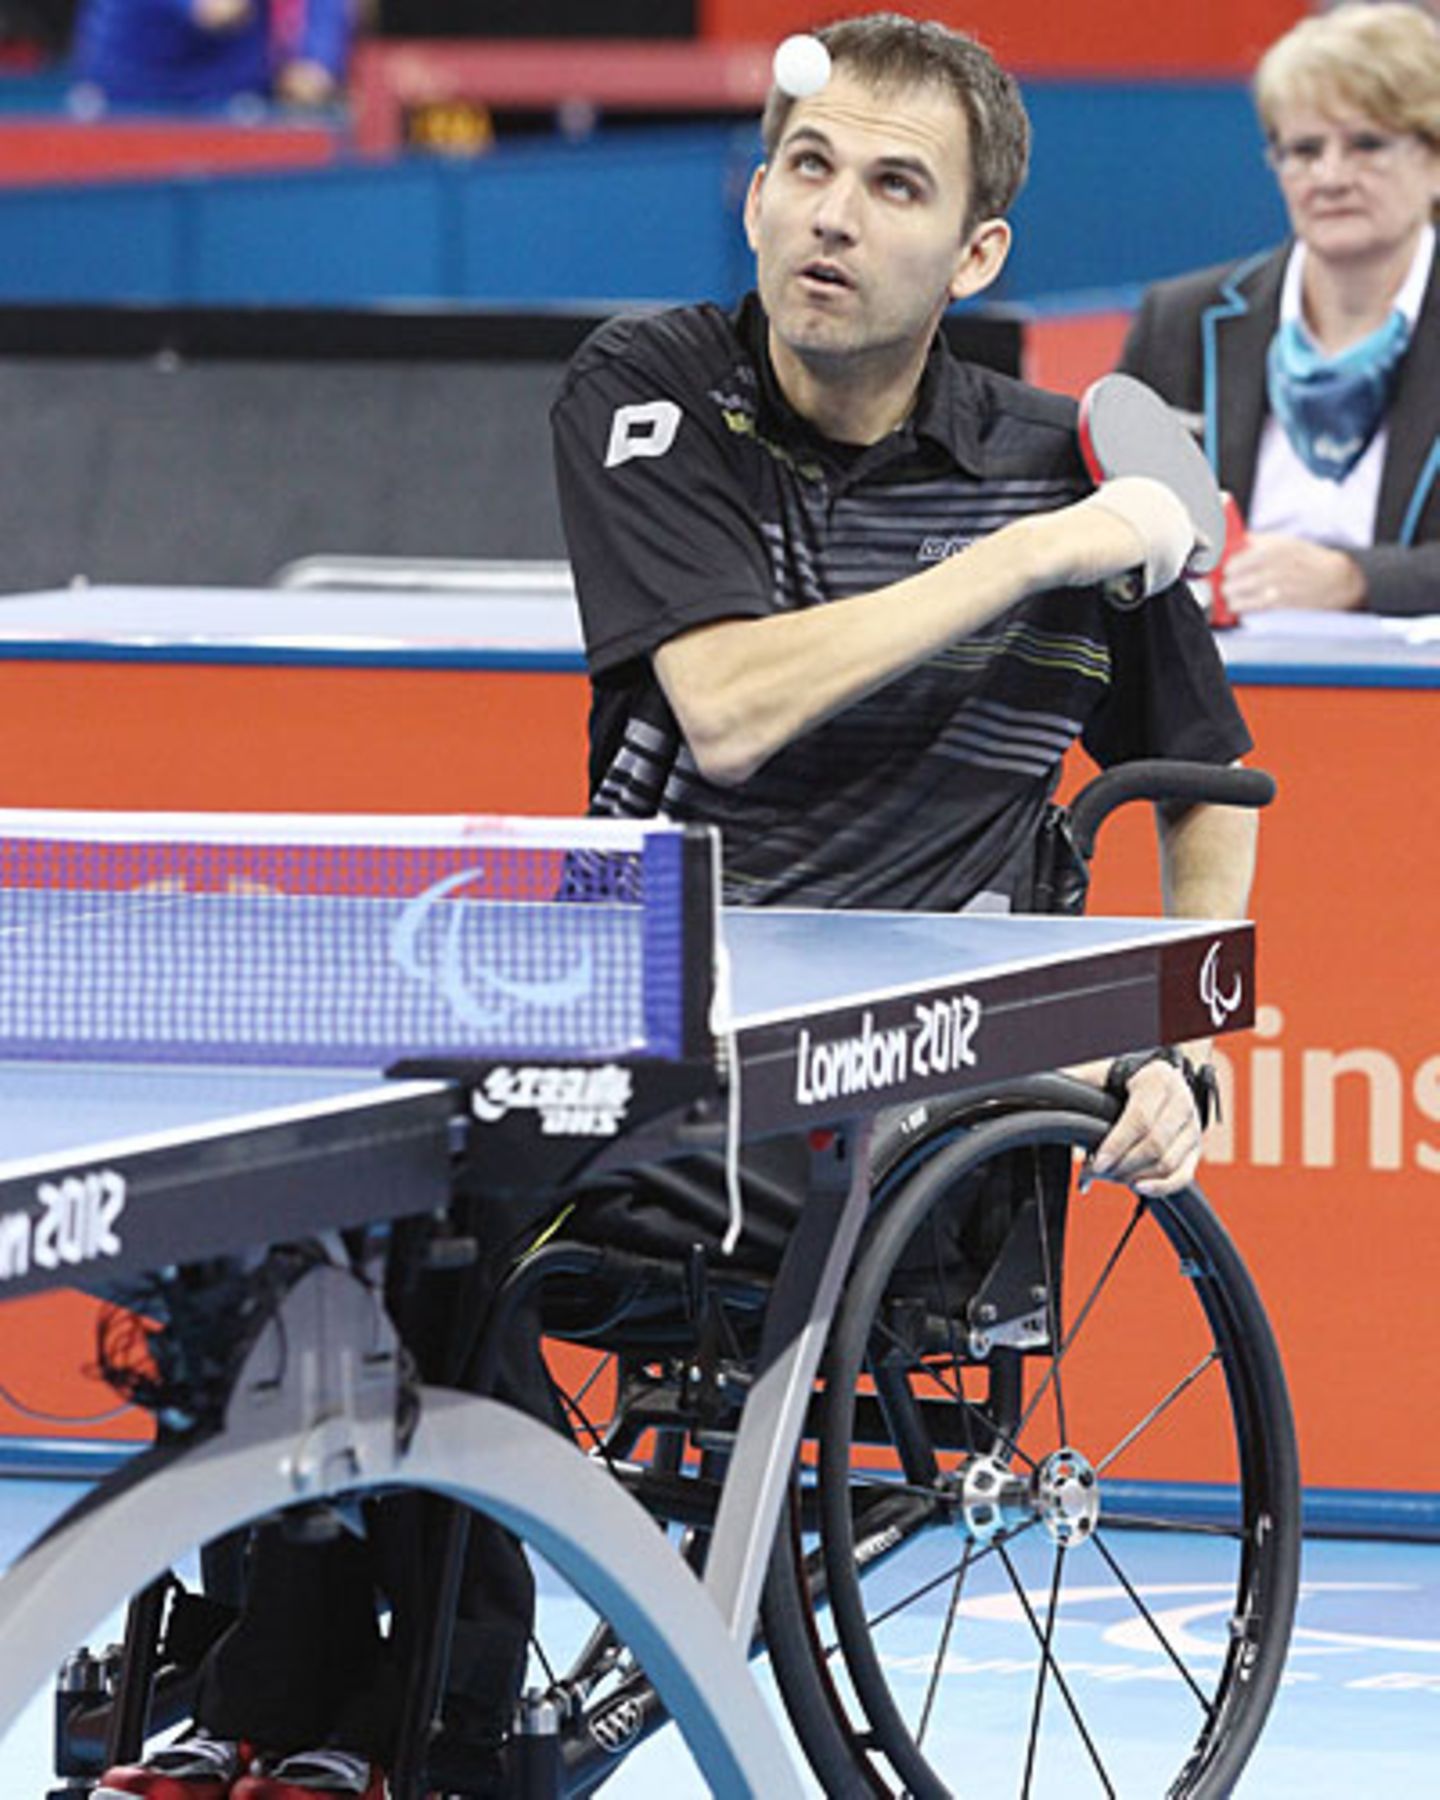 Tischtennis-Spieler Holger Nikelis